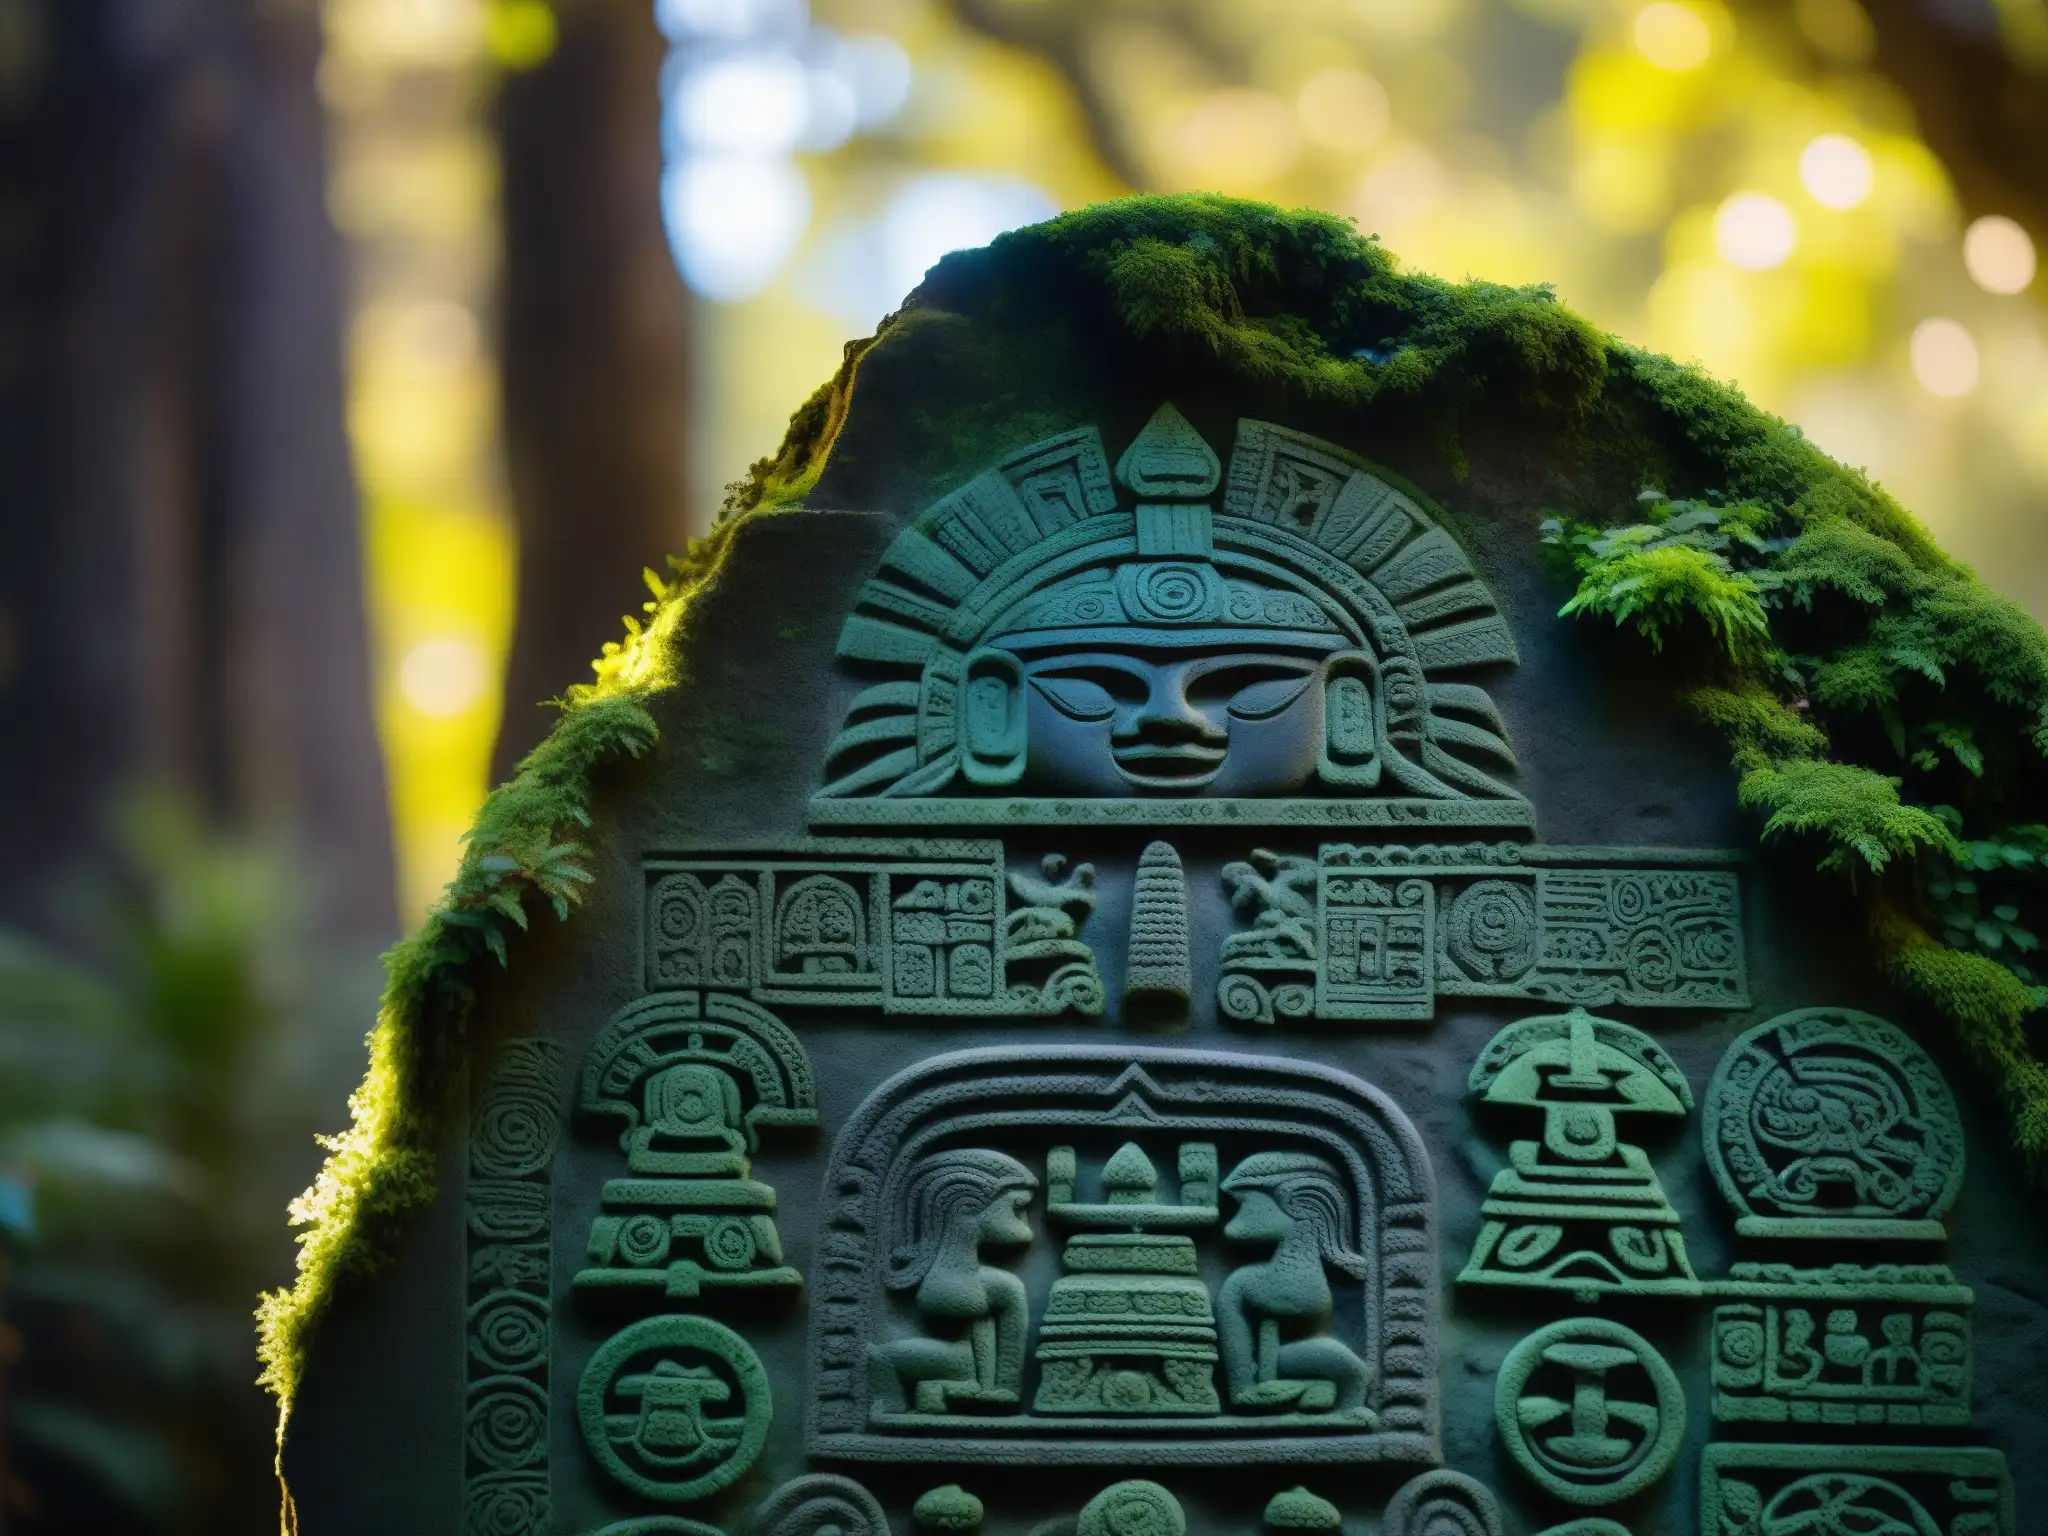 La misteriosa Piedra Encantada de Tlalpan, enigma prehispánico tallado con detalle, iluminado por la luz entre los árboles